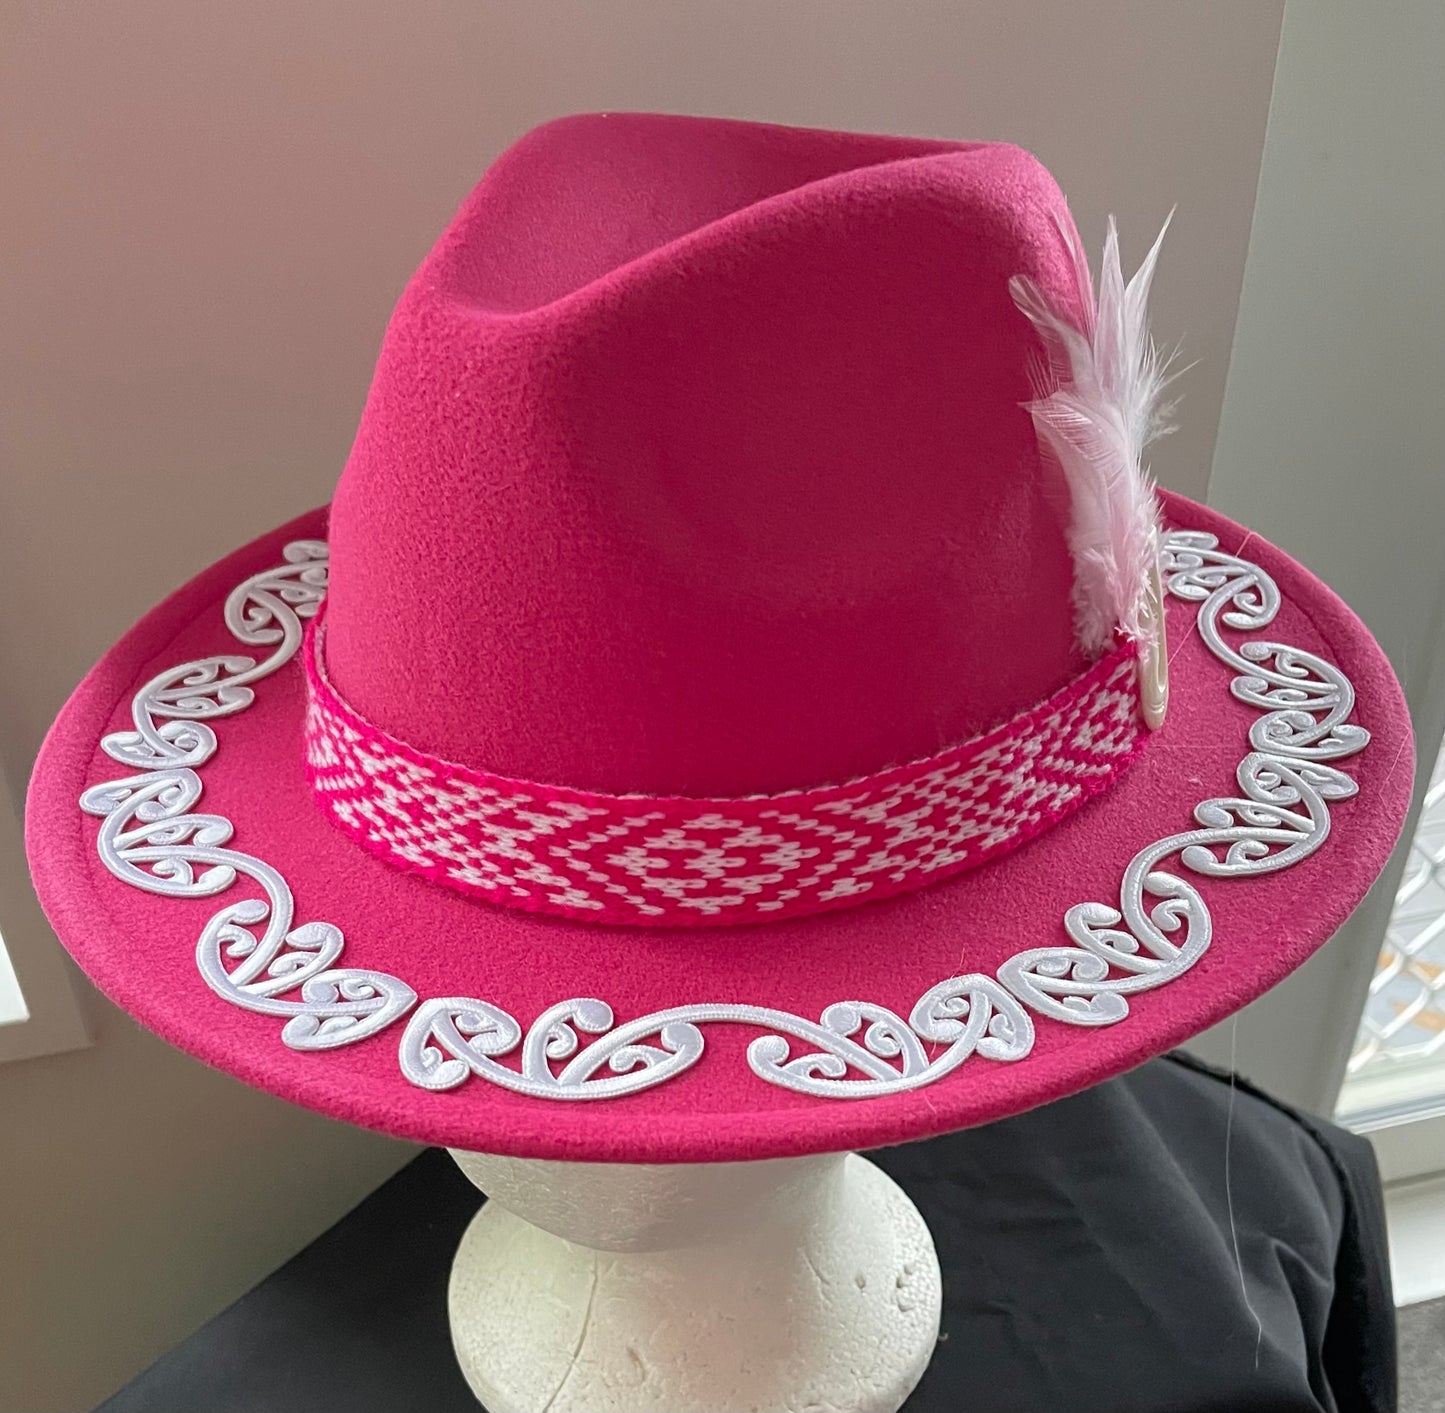 Potae - Pink Fedora Felt Hat